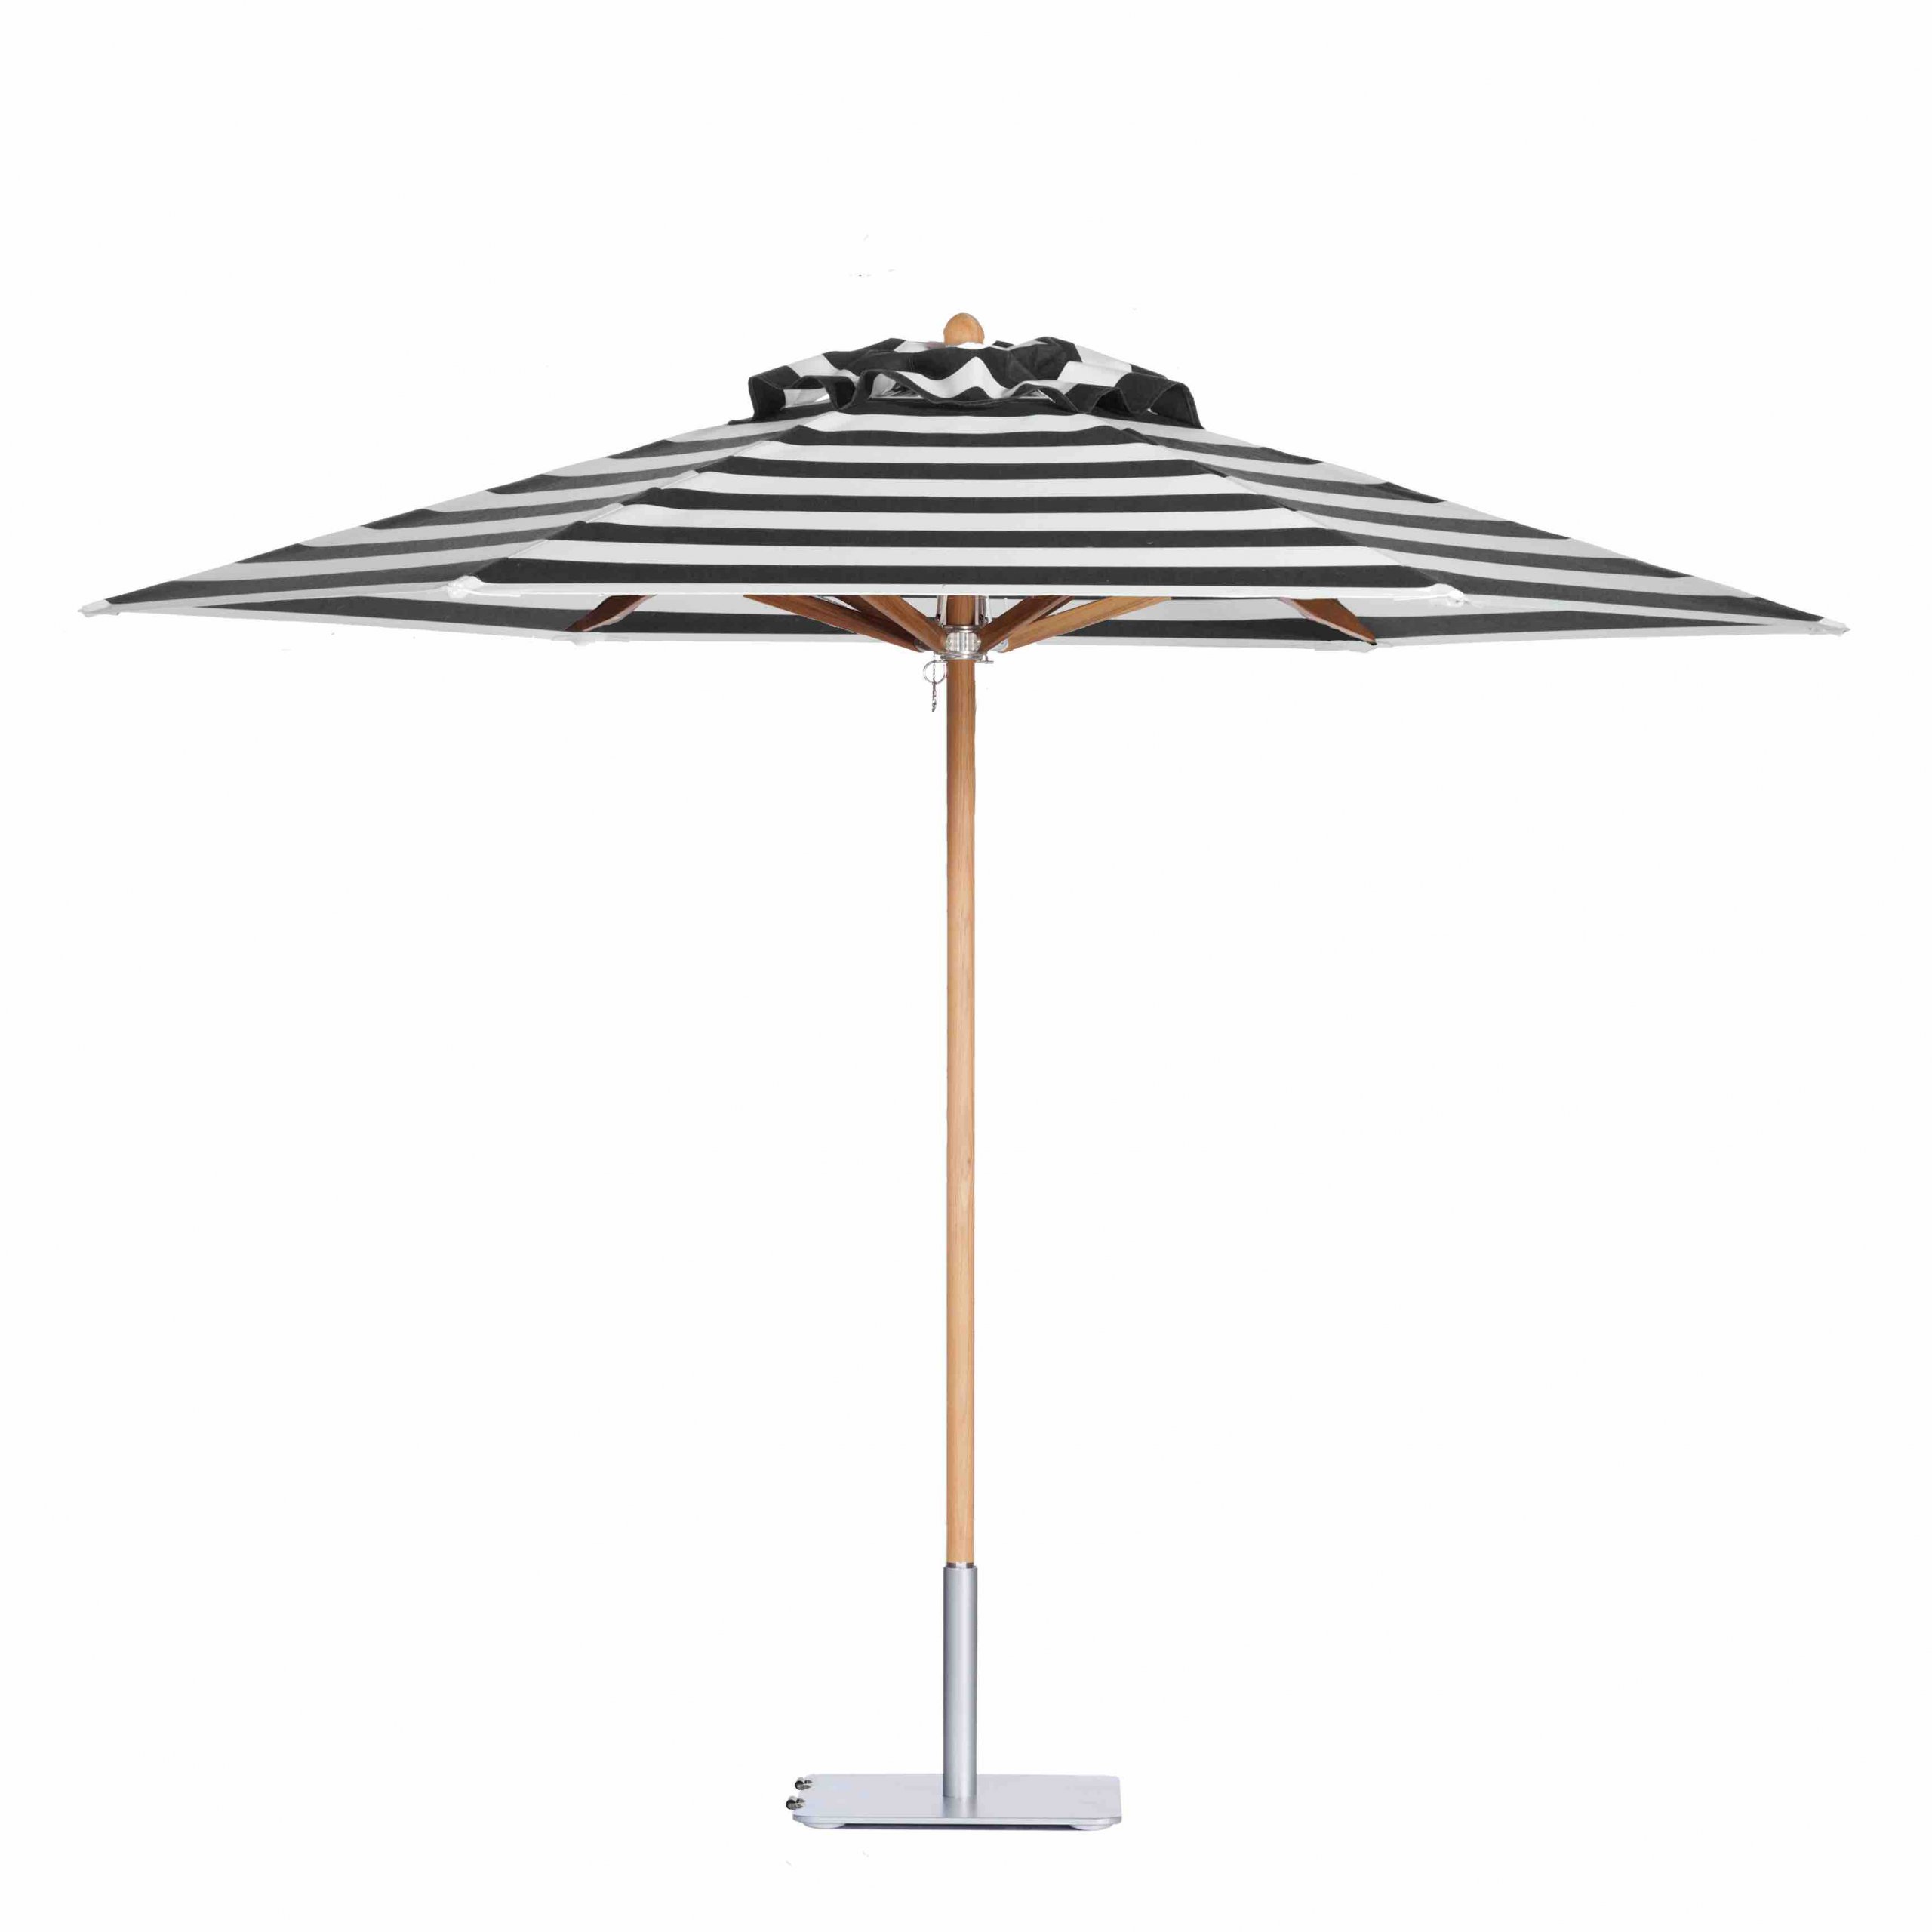 Image of Riviera teak umbrella